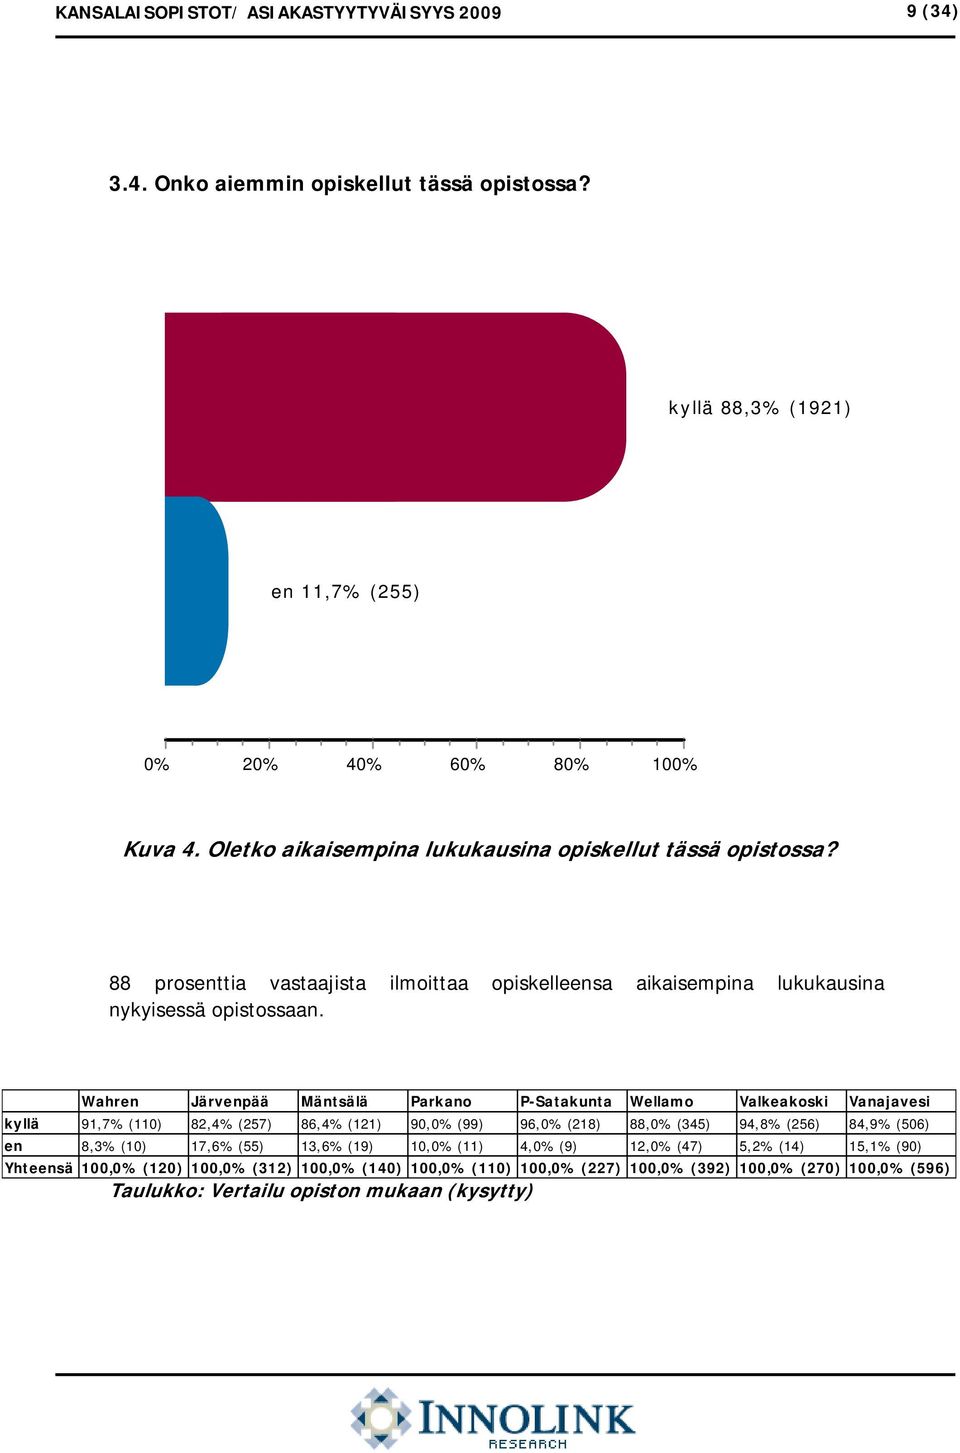 Wahren Järvenpää Mäntsälä Parkano P-Satakunta Wellamo Valkeakoski Vanajavesi kyllä 91,7% (110) 82,4% (257) 86,4% (121) 9% (99) 96,0% (218) 88,0% (345) 94,8% (256) 84,9% (506)